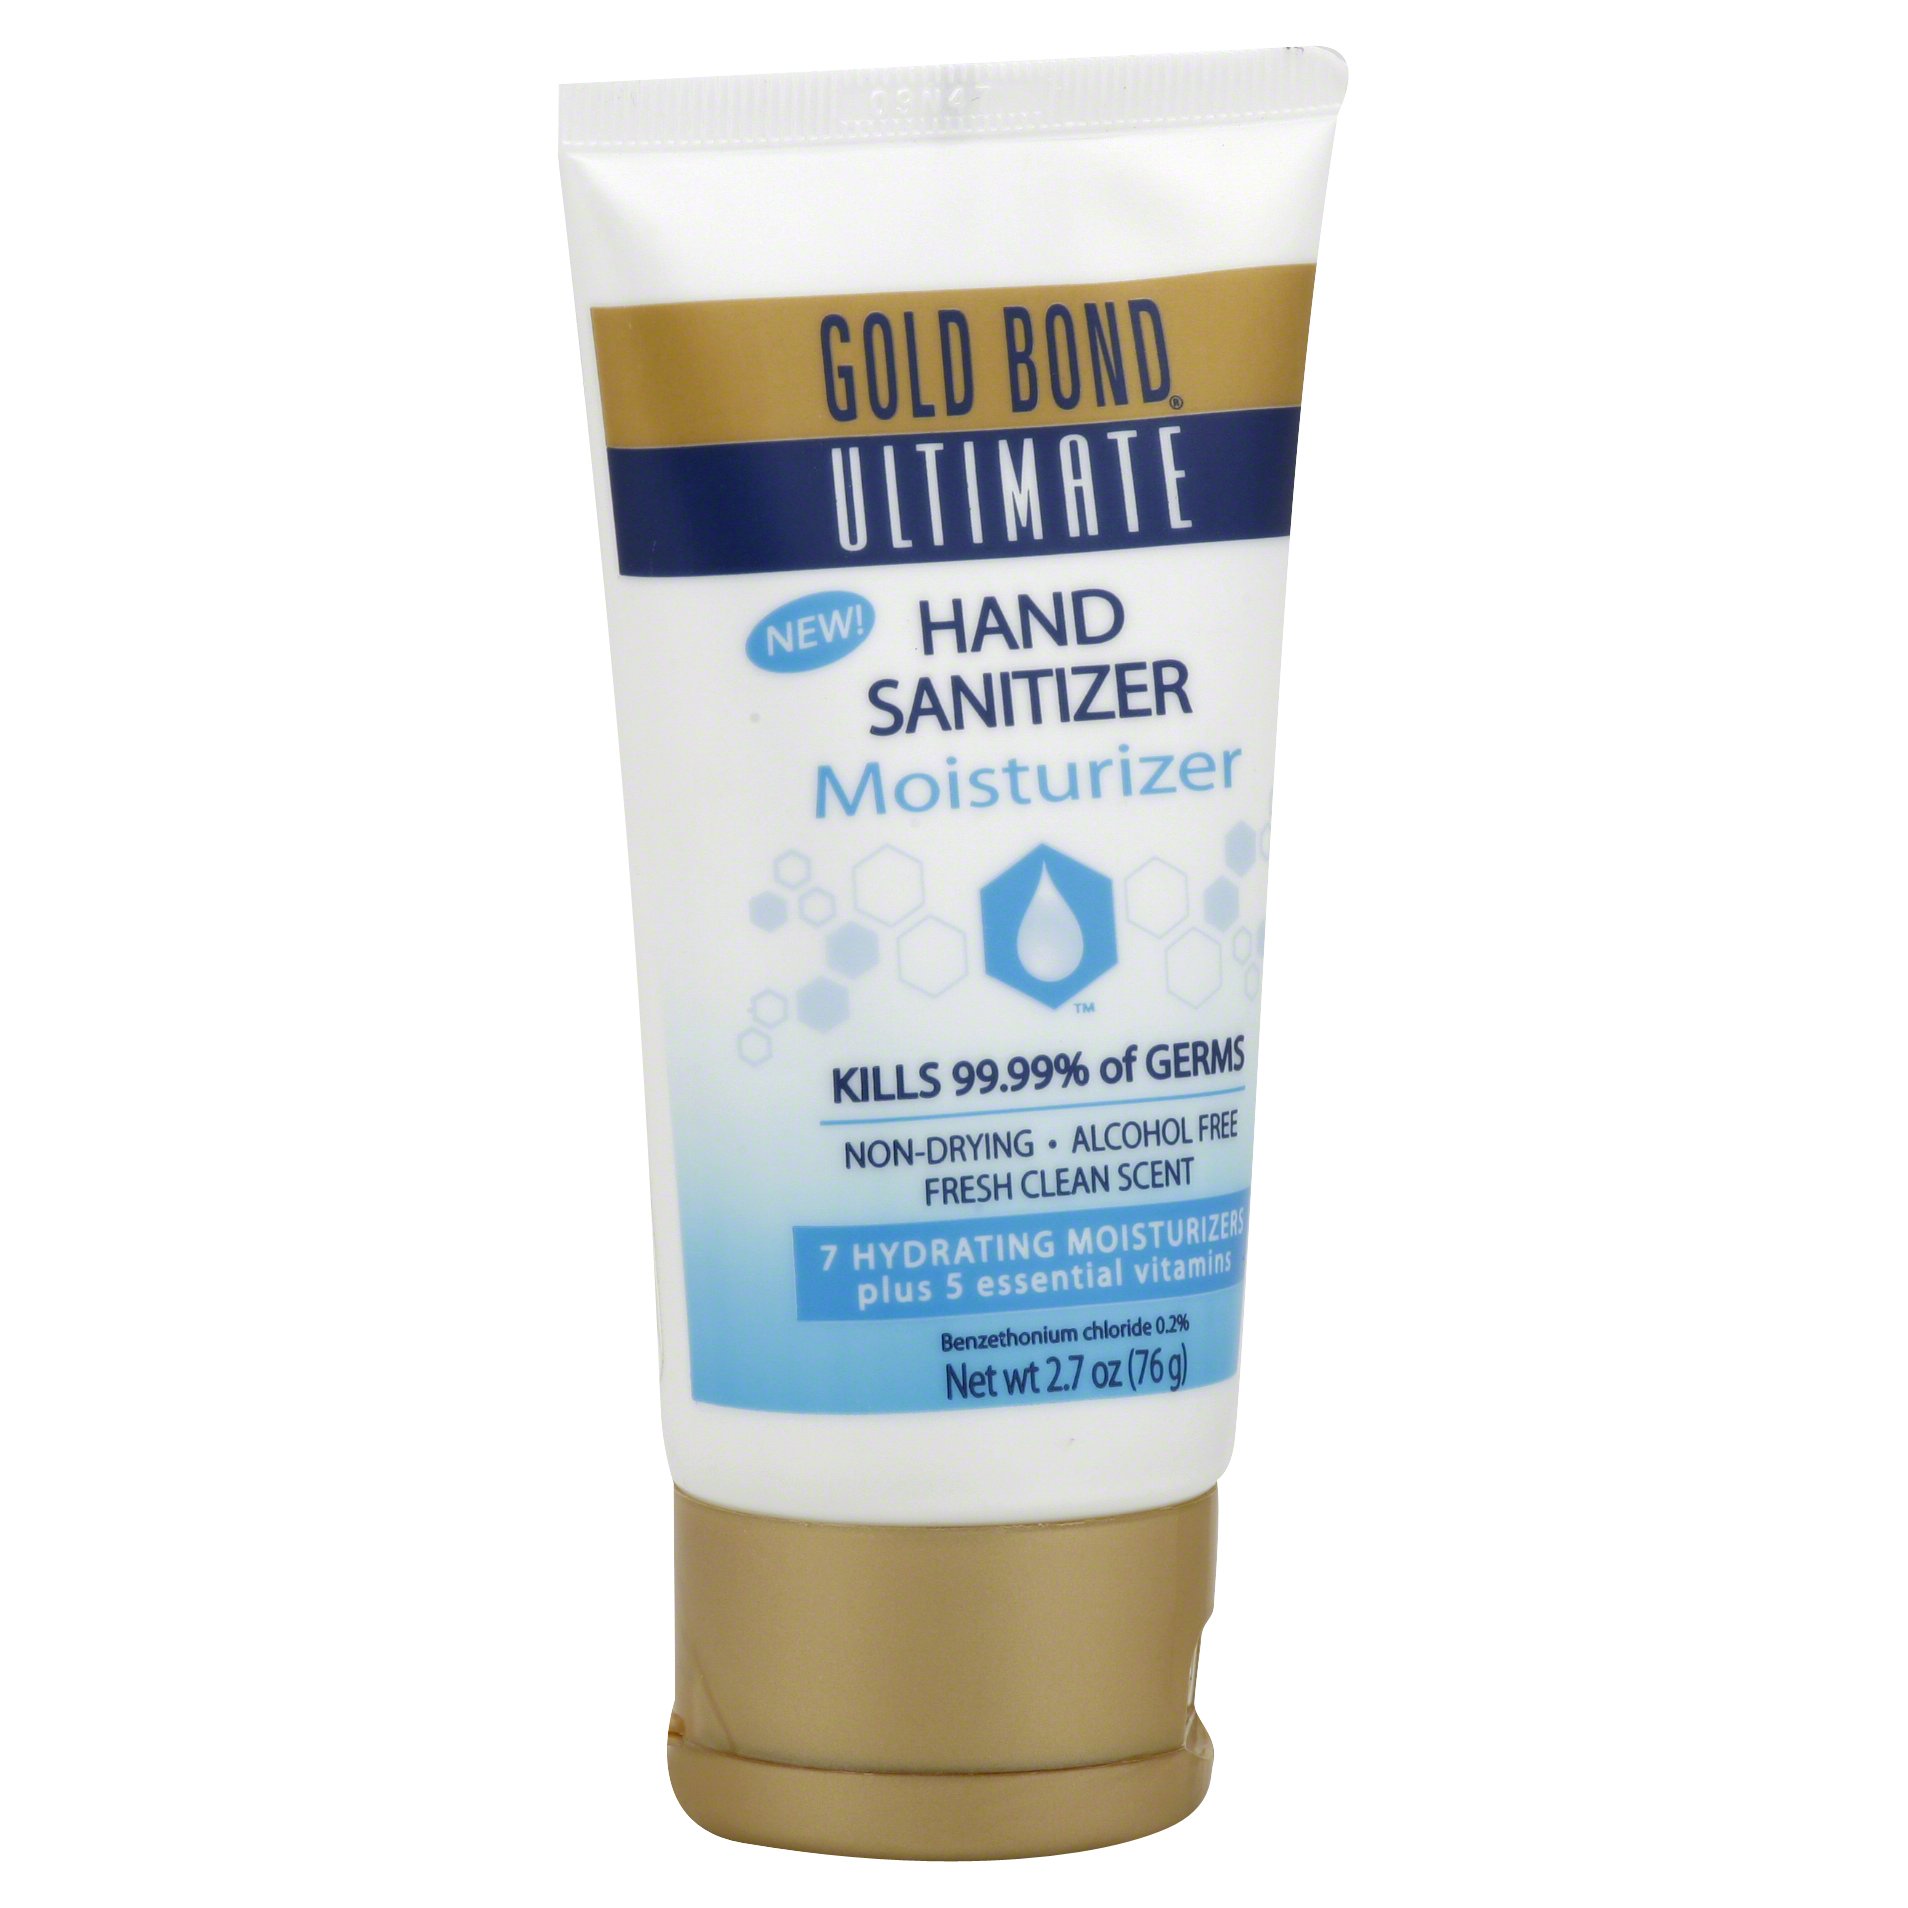 Gold Bond Ultimate Hand Sanitizer Moisturizer, 2.7oz - image 3 of 4